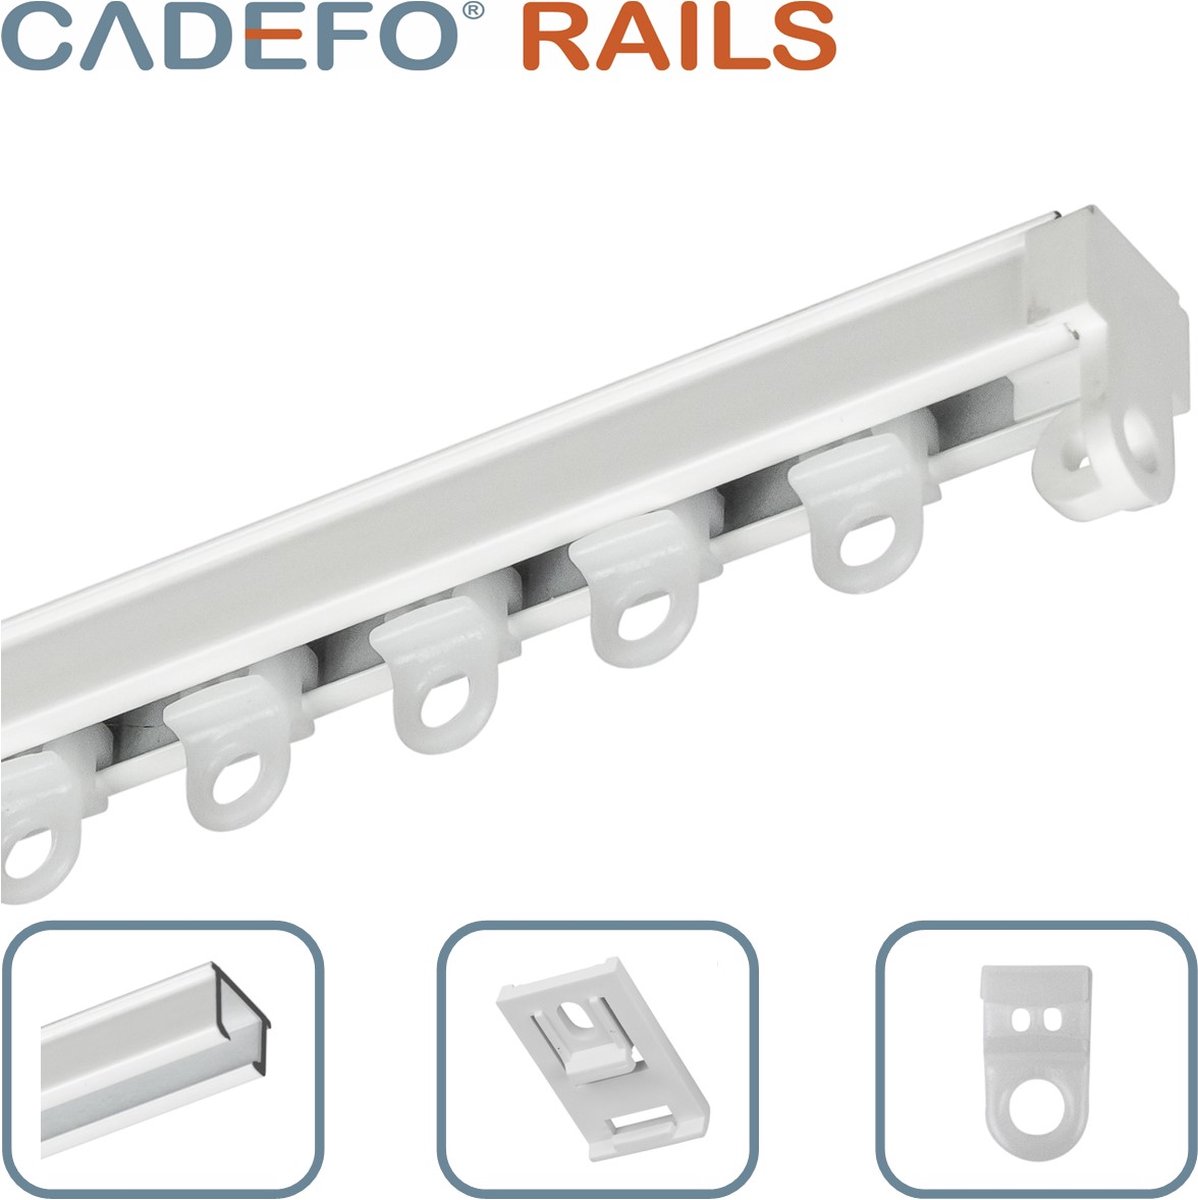 CADEFO RAILS (351 - 400 cm) Gordijnrails - Compleet op maat! - UIT 1 STUK - Leverbaar tot 6 meter - Plafondbevestiging - Lengte 353 cm